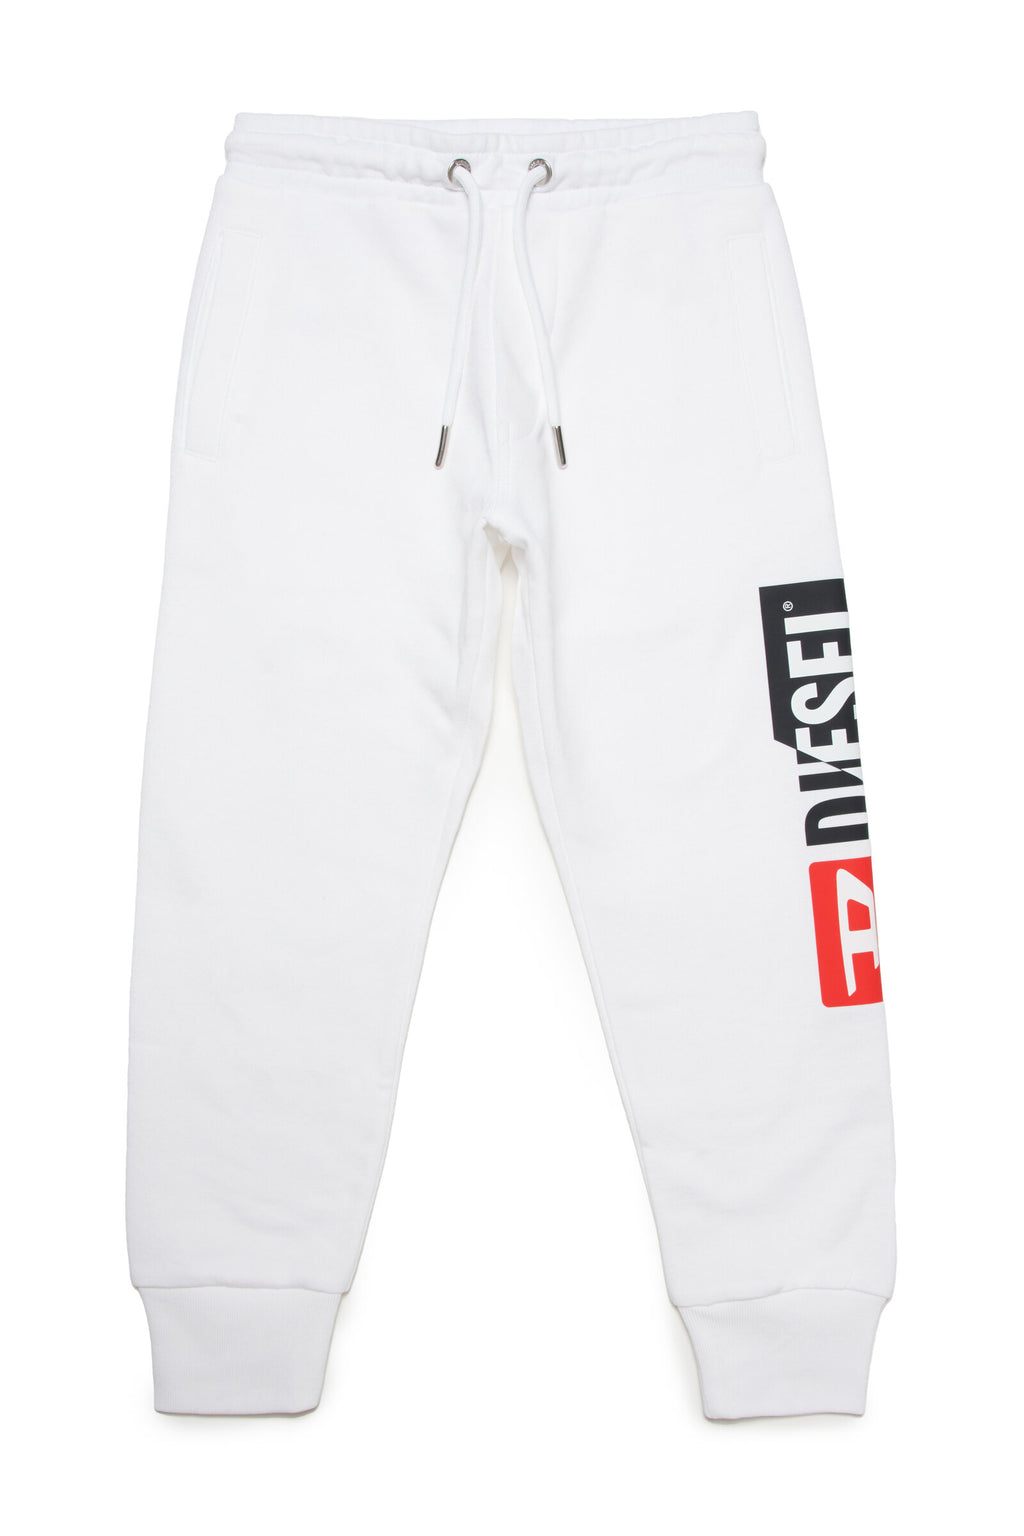 Pantaloni jogger bianchi con logo Diesel double